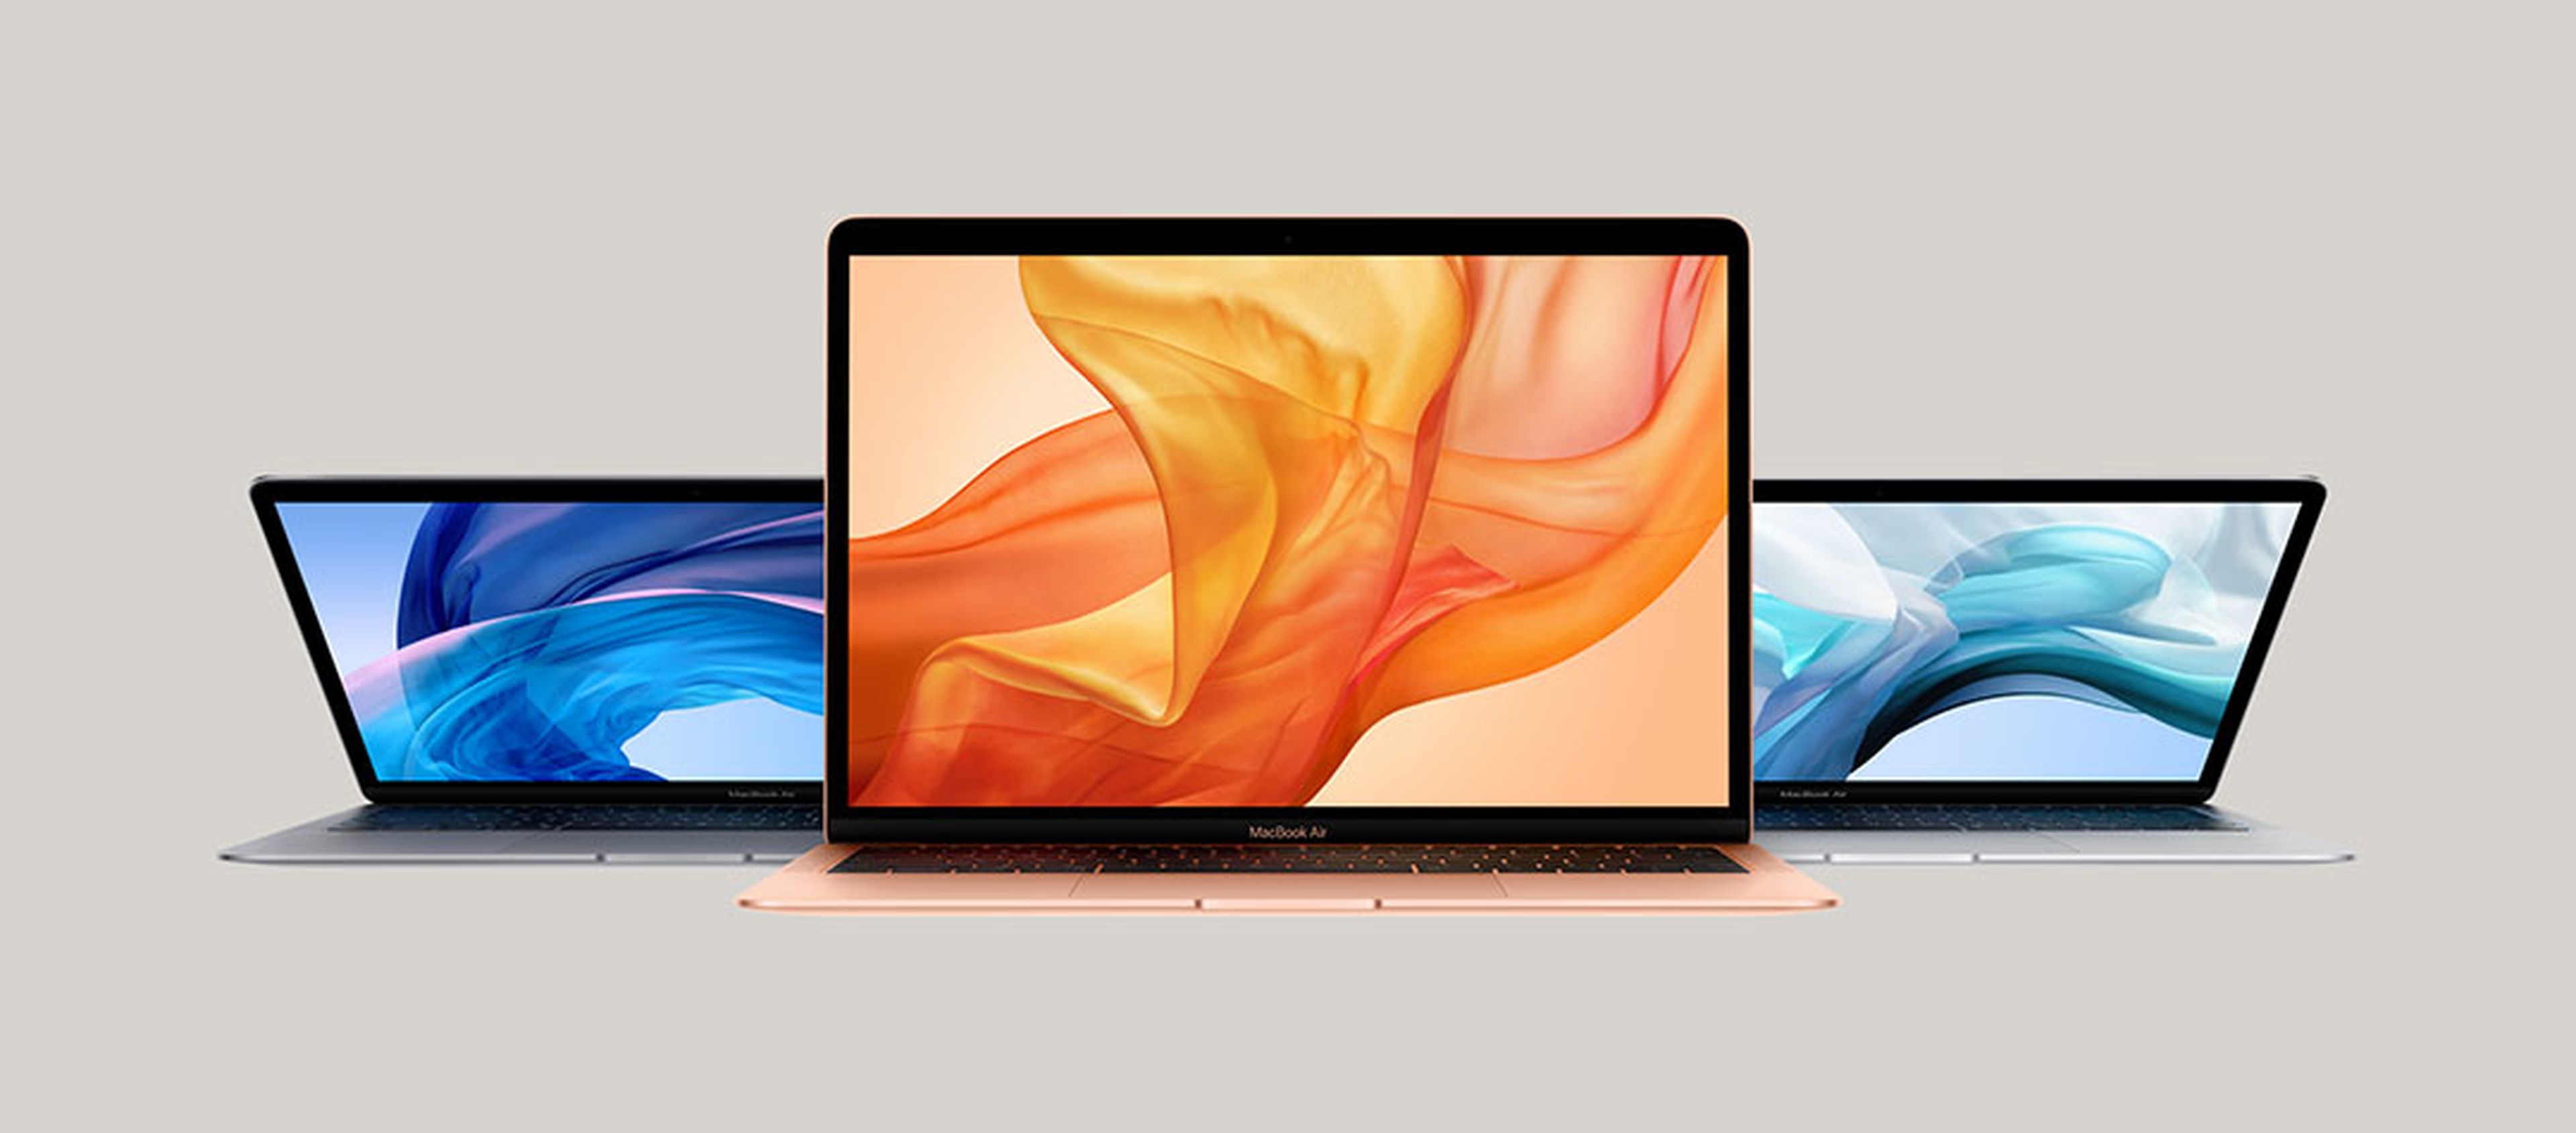 MacBook 2018: características, disponibilidad precio | Computer